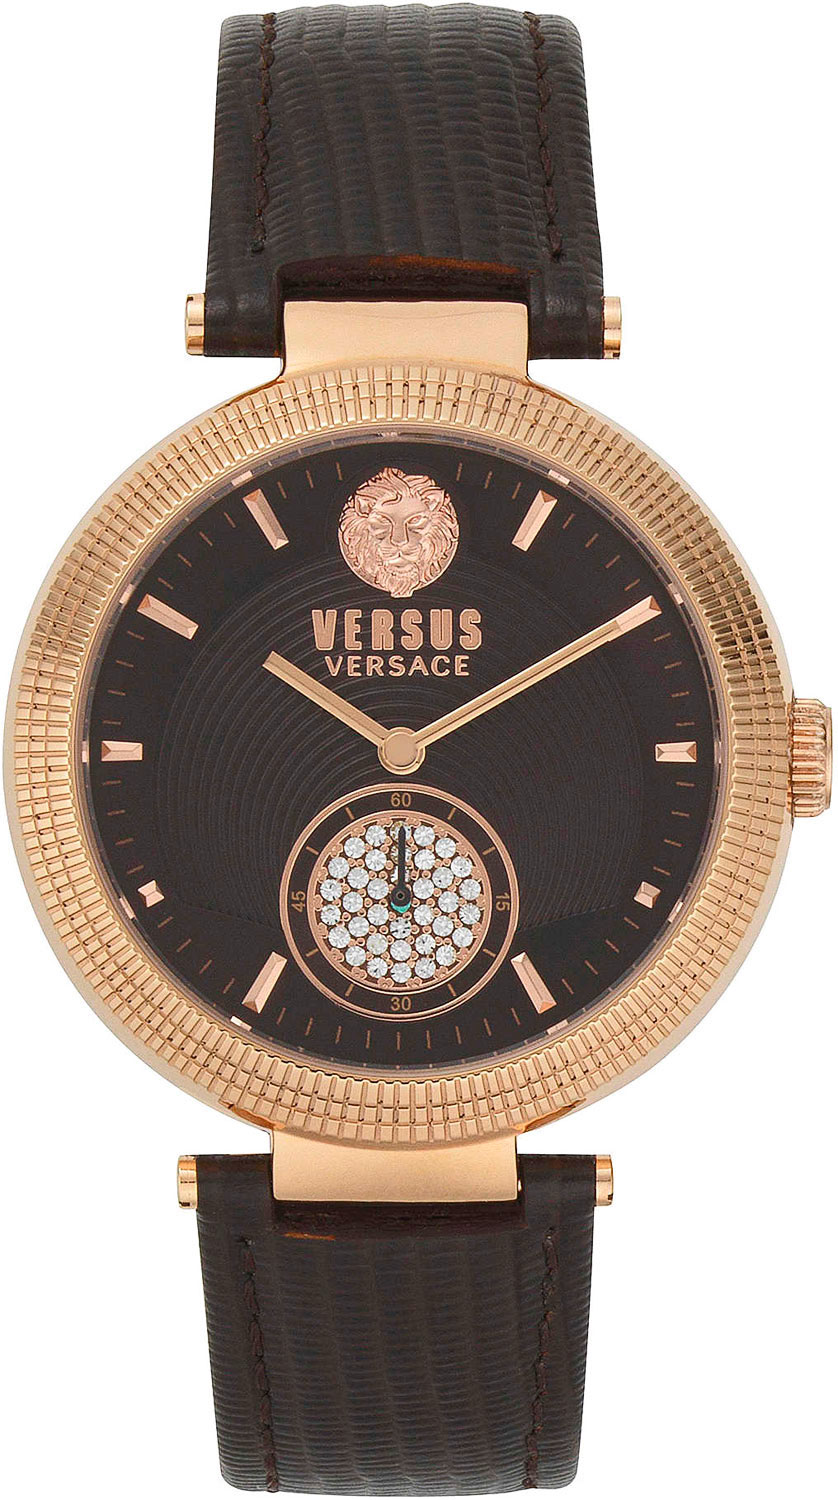   VERSUS Versace VSP791318